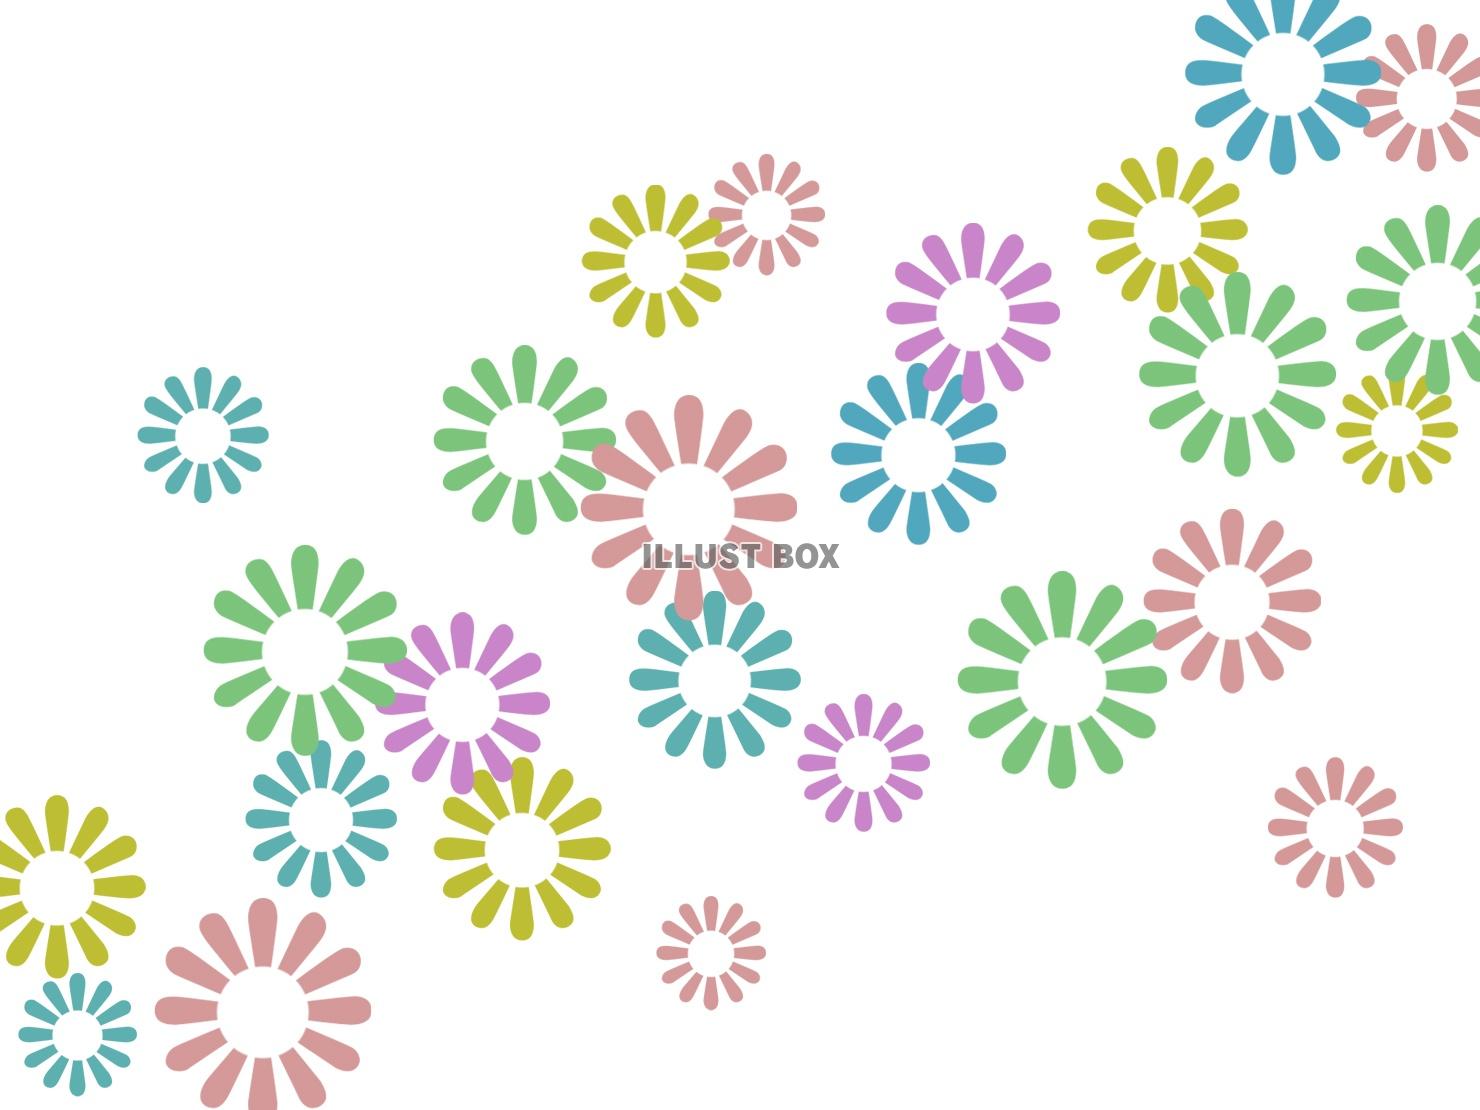 無料イラスト 花模様の壁紙カラフル柄の背景イラスト素材